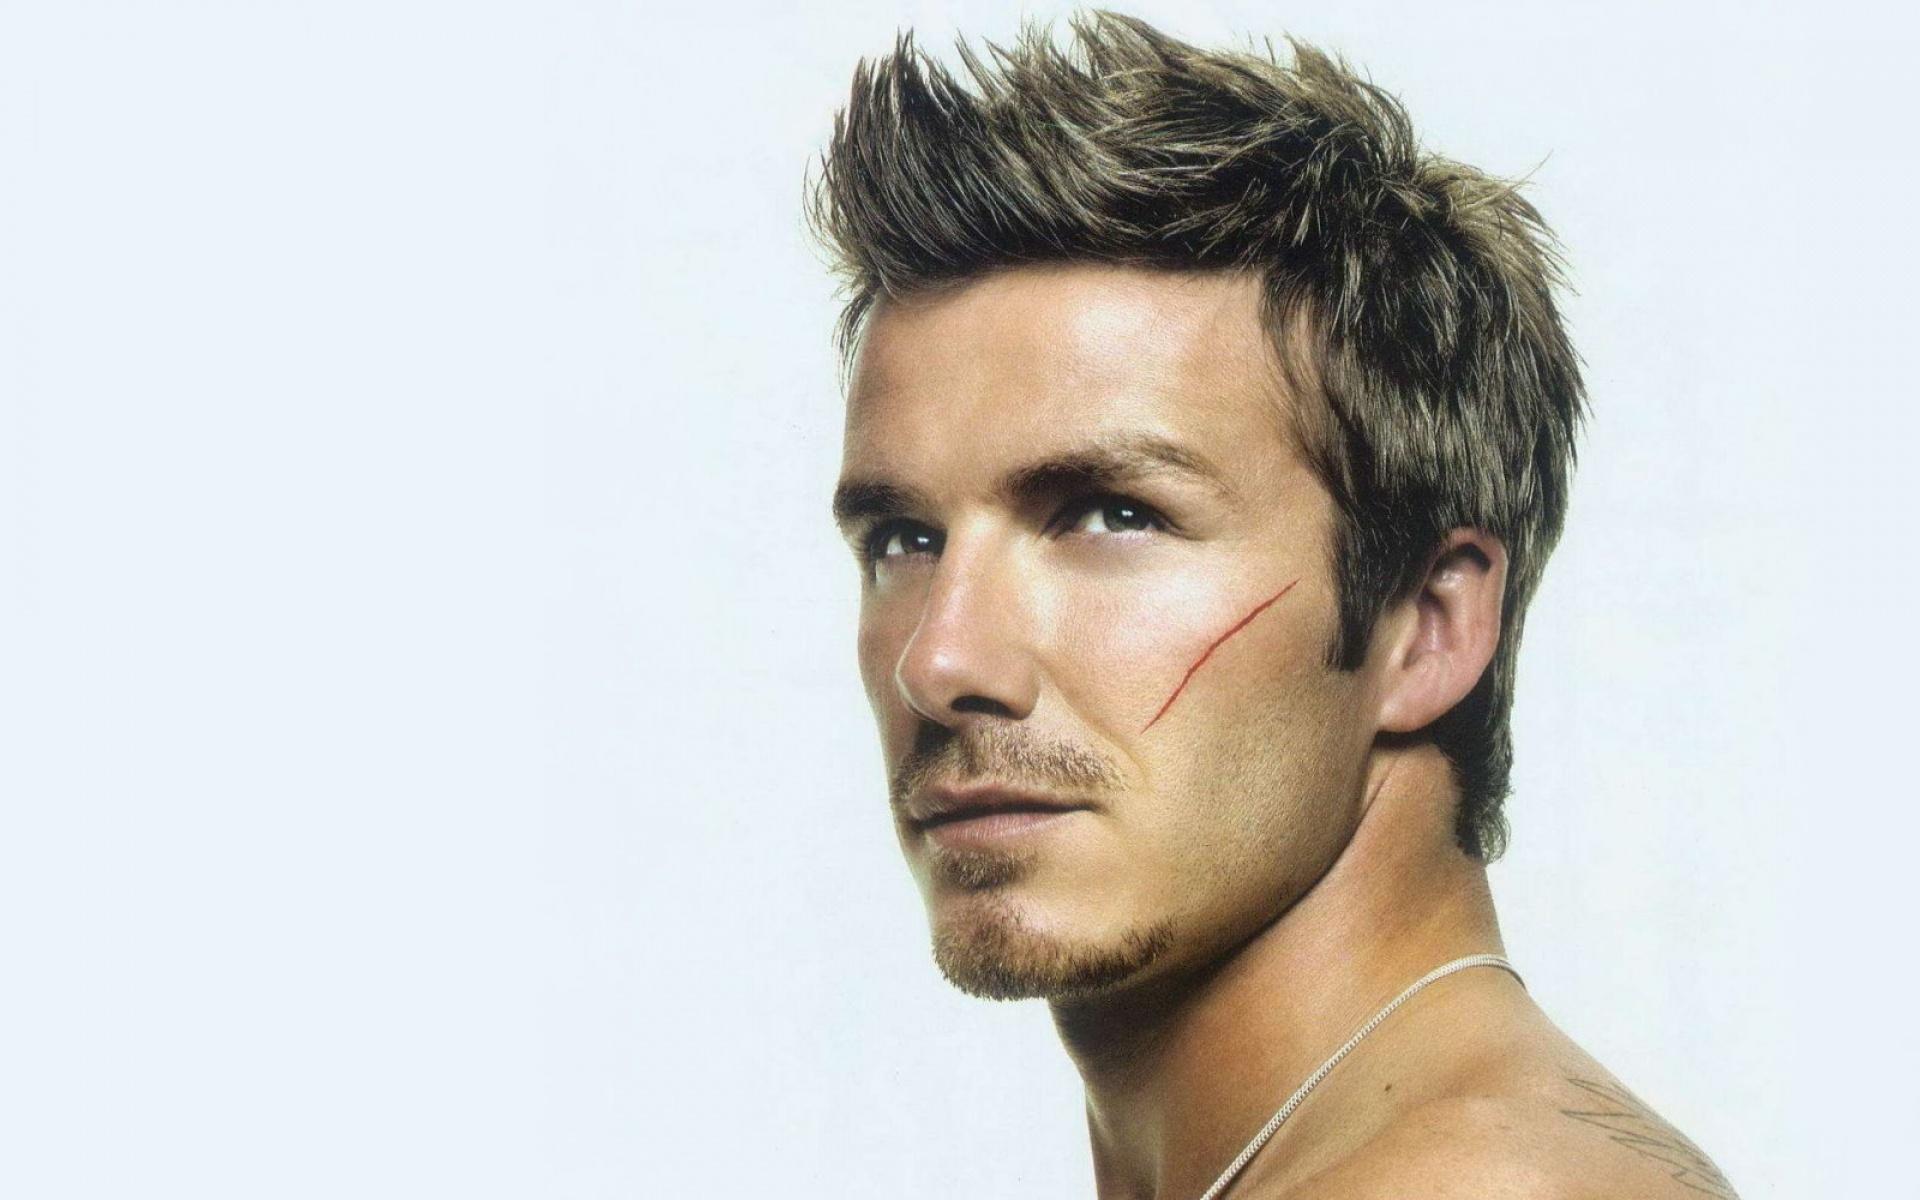 David Beckham Wallpaper HD